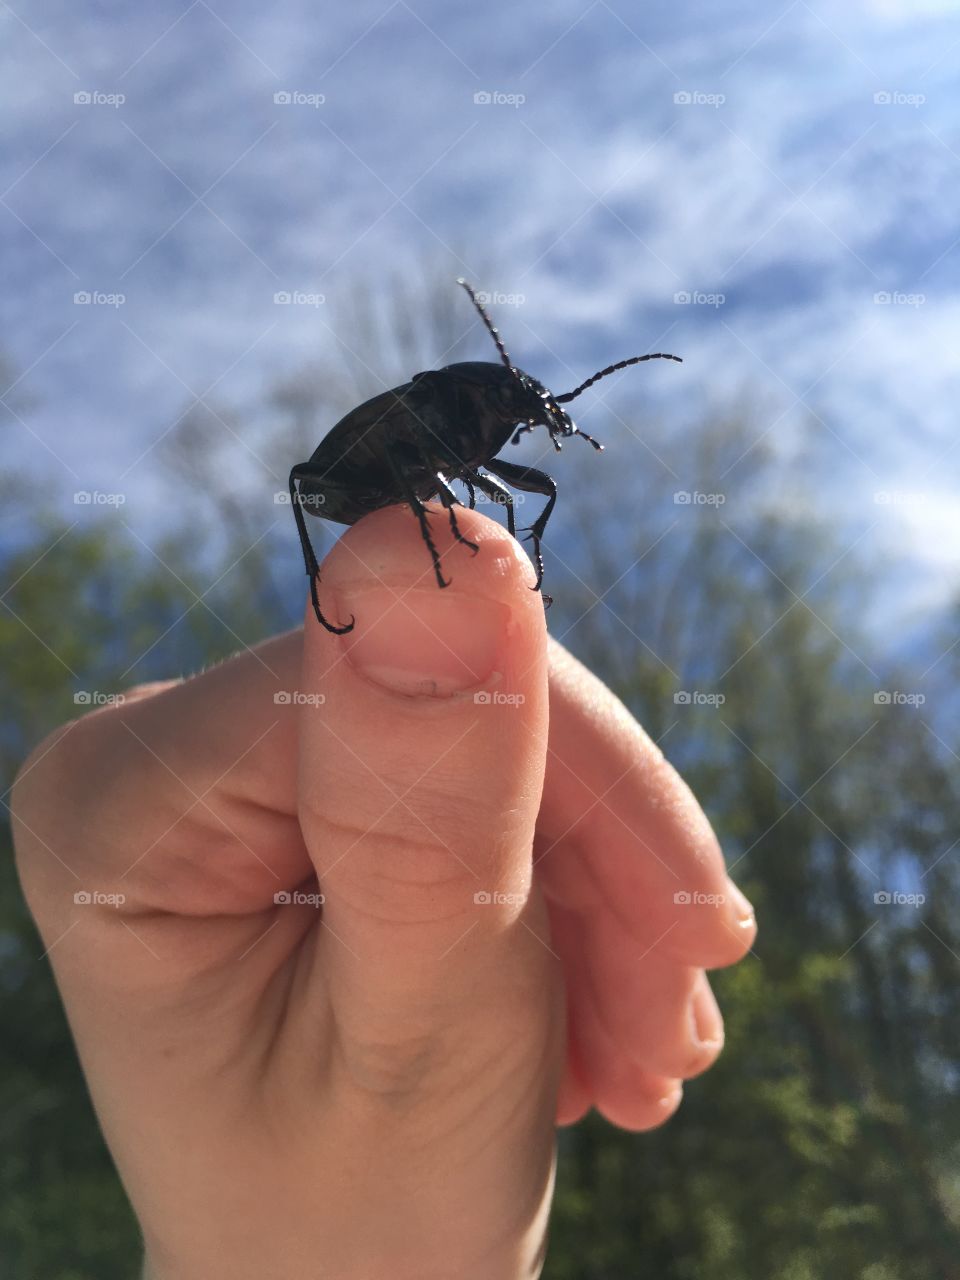 A beetle 